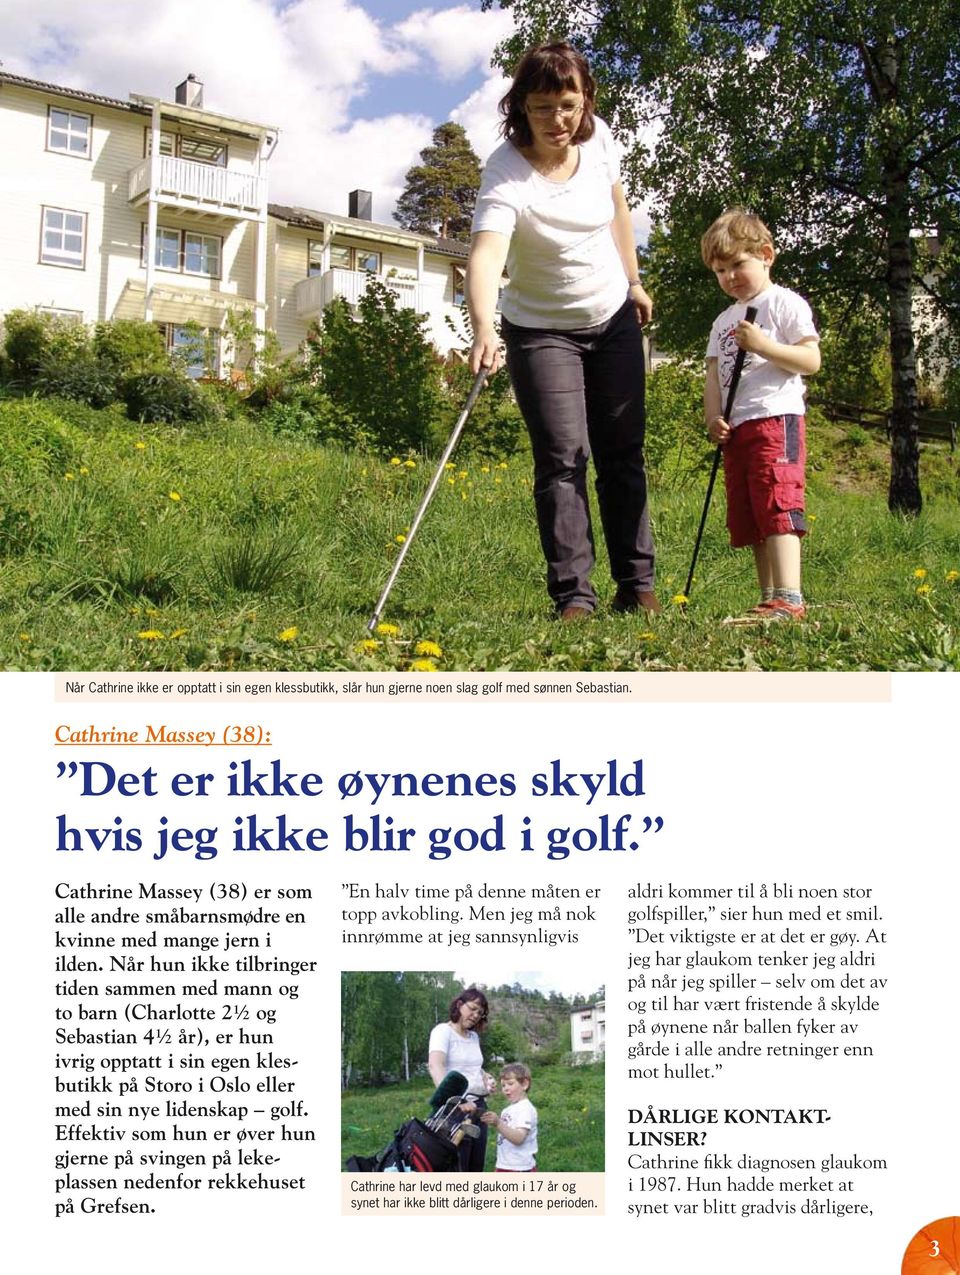 Når hun ikke tilbringer tiden sammen med mann og to barn (Charlotte 2½ og Sebastian 4½ år), er hun ivrig opptatt i sin egen klesbutikk på Storo i Oslo eller med sin nye lidenskap golf.